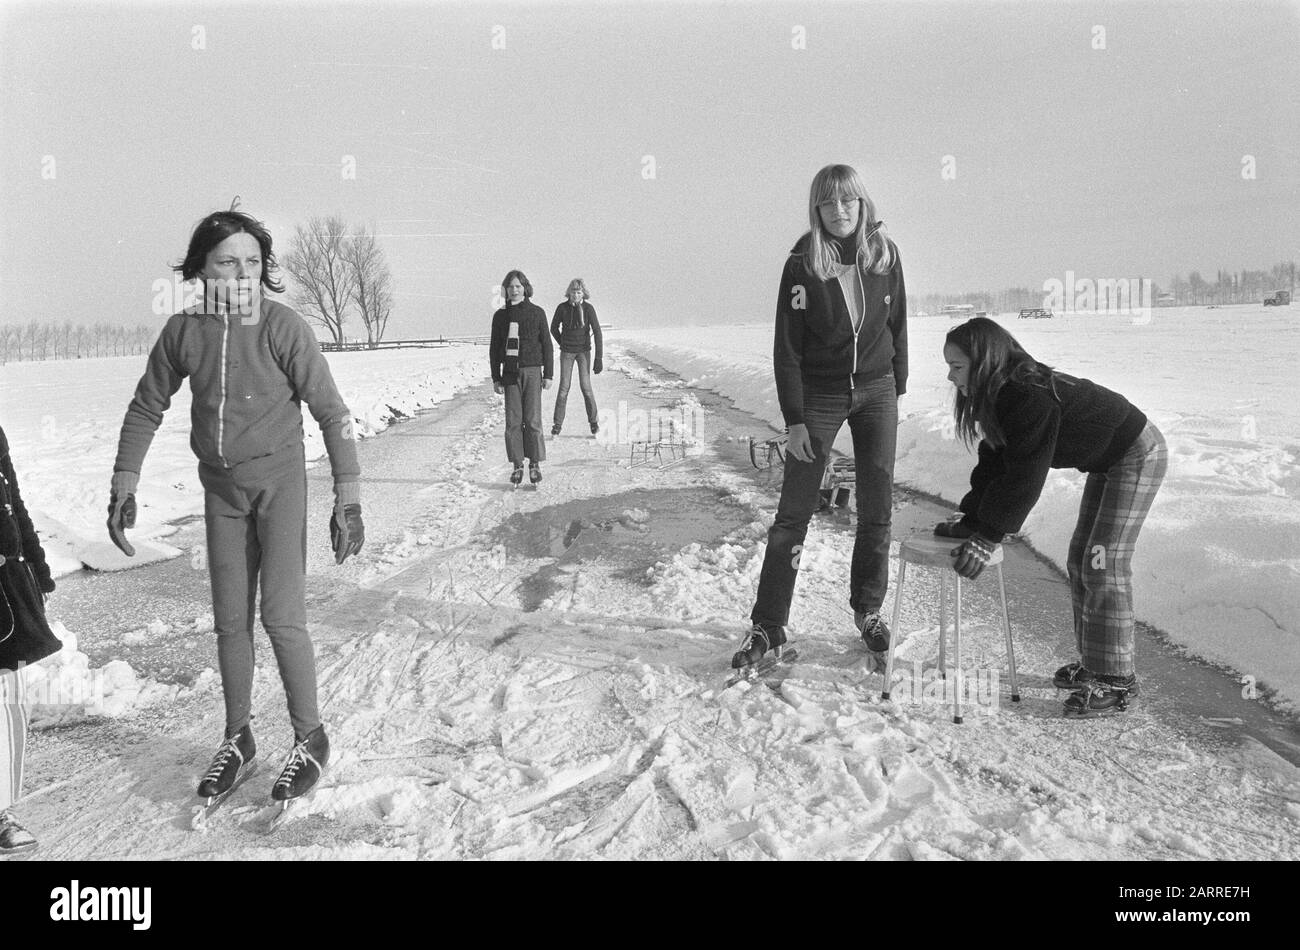 Winterszenen Eisläufer in einer Schneelandschaft Datum: 2. Dezember 1973 Schlagwörter: Schnee, Eis, Skater Stockfoto